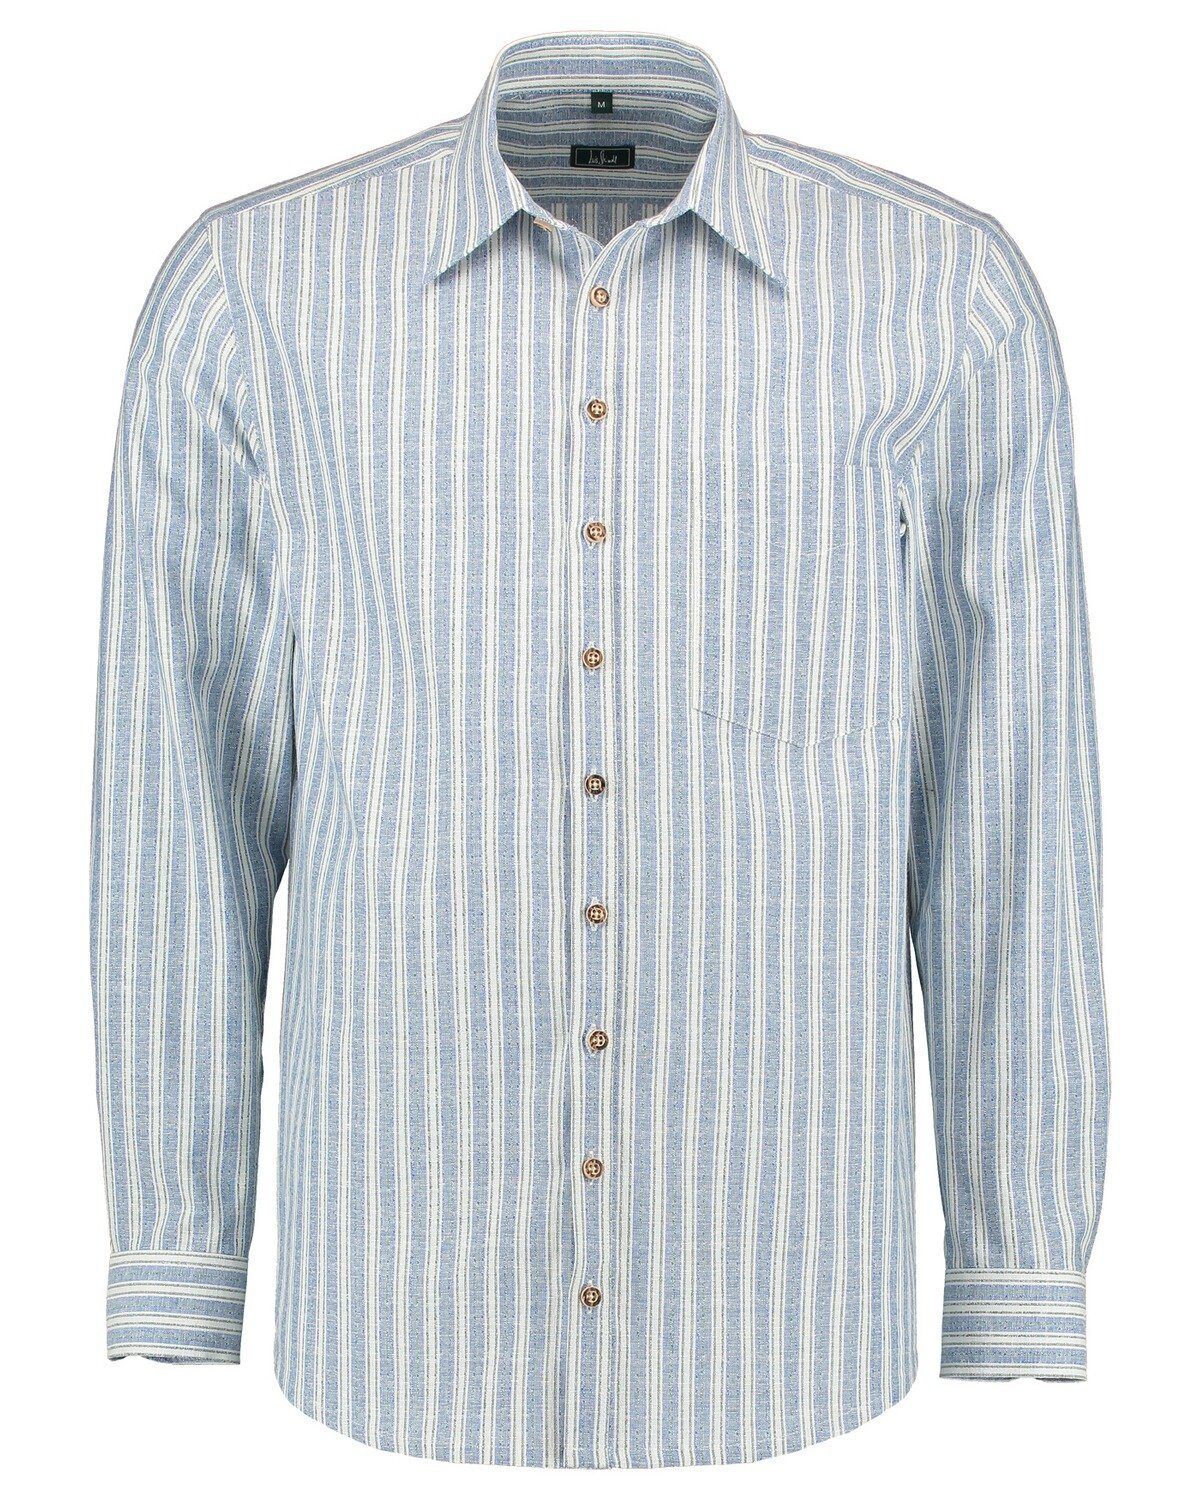 Luis Steindl Trachtenhemd Trachtenhemd mit Streifen Blau